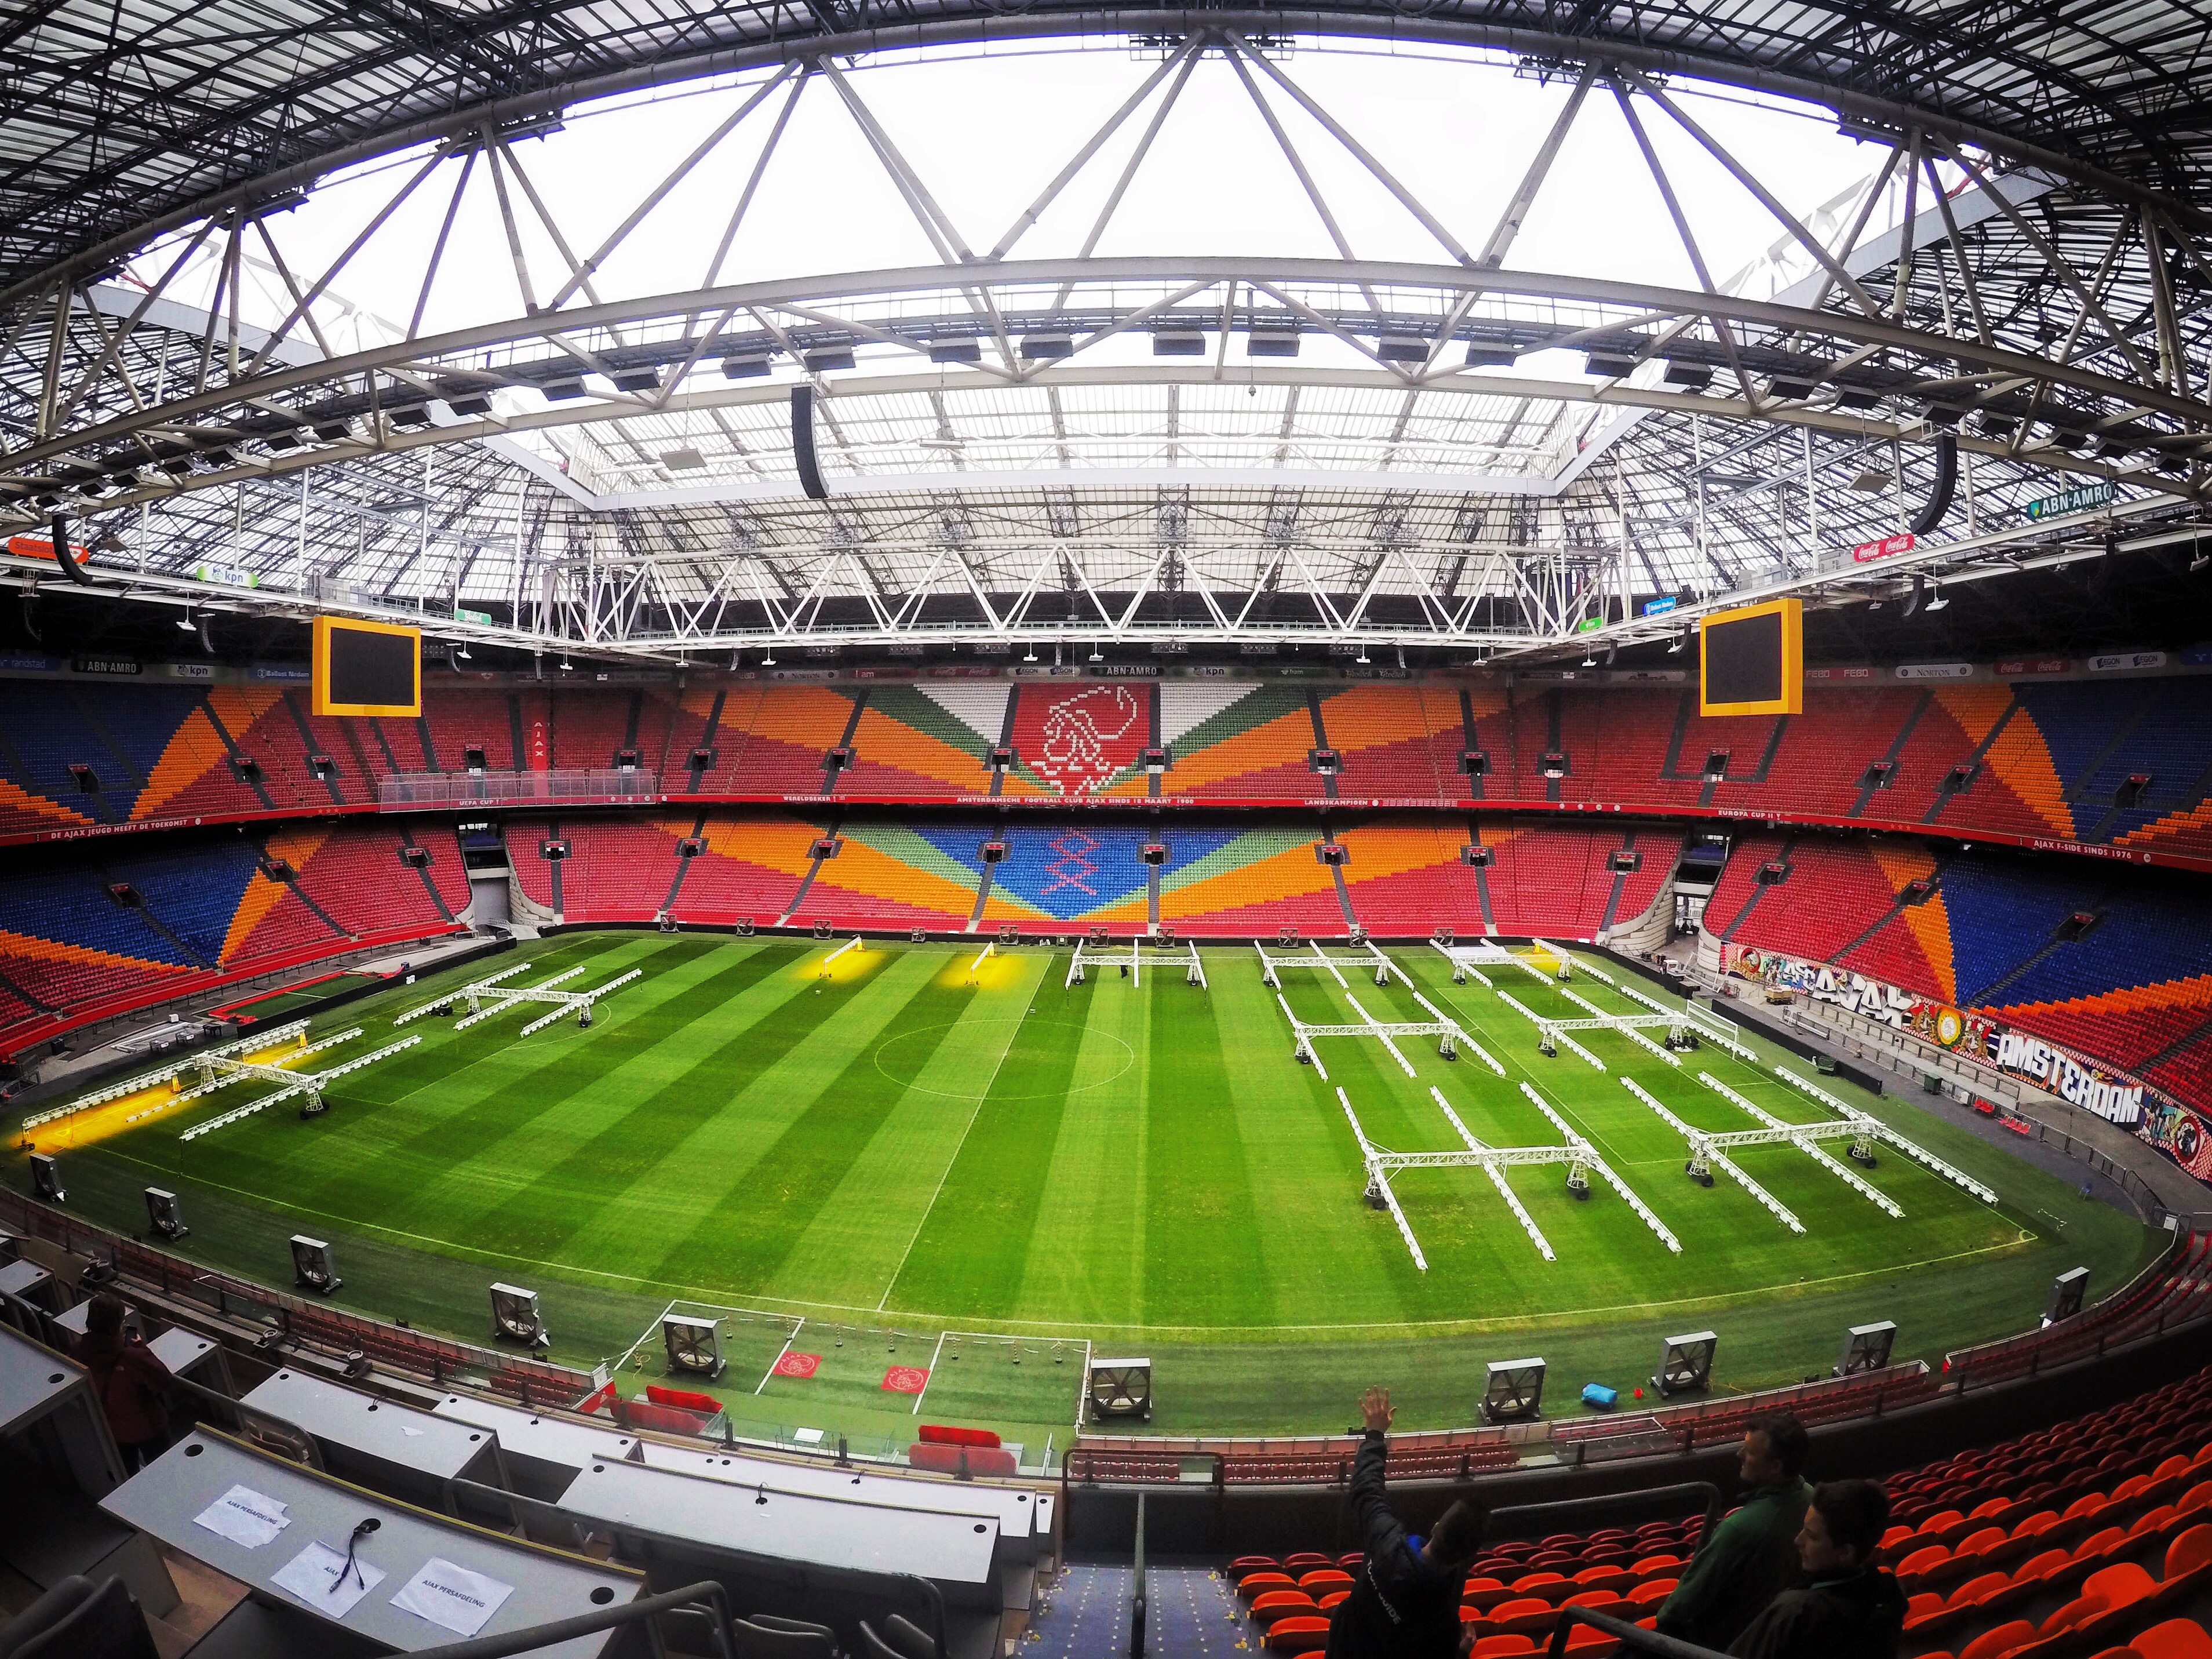 Amsterdam ArenA Stadium tour